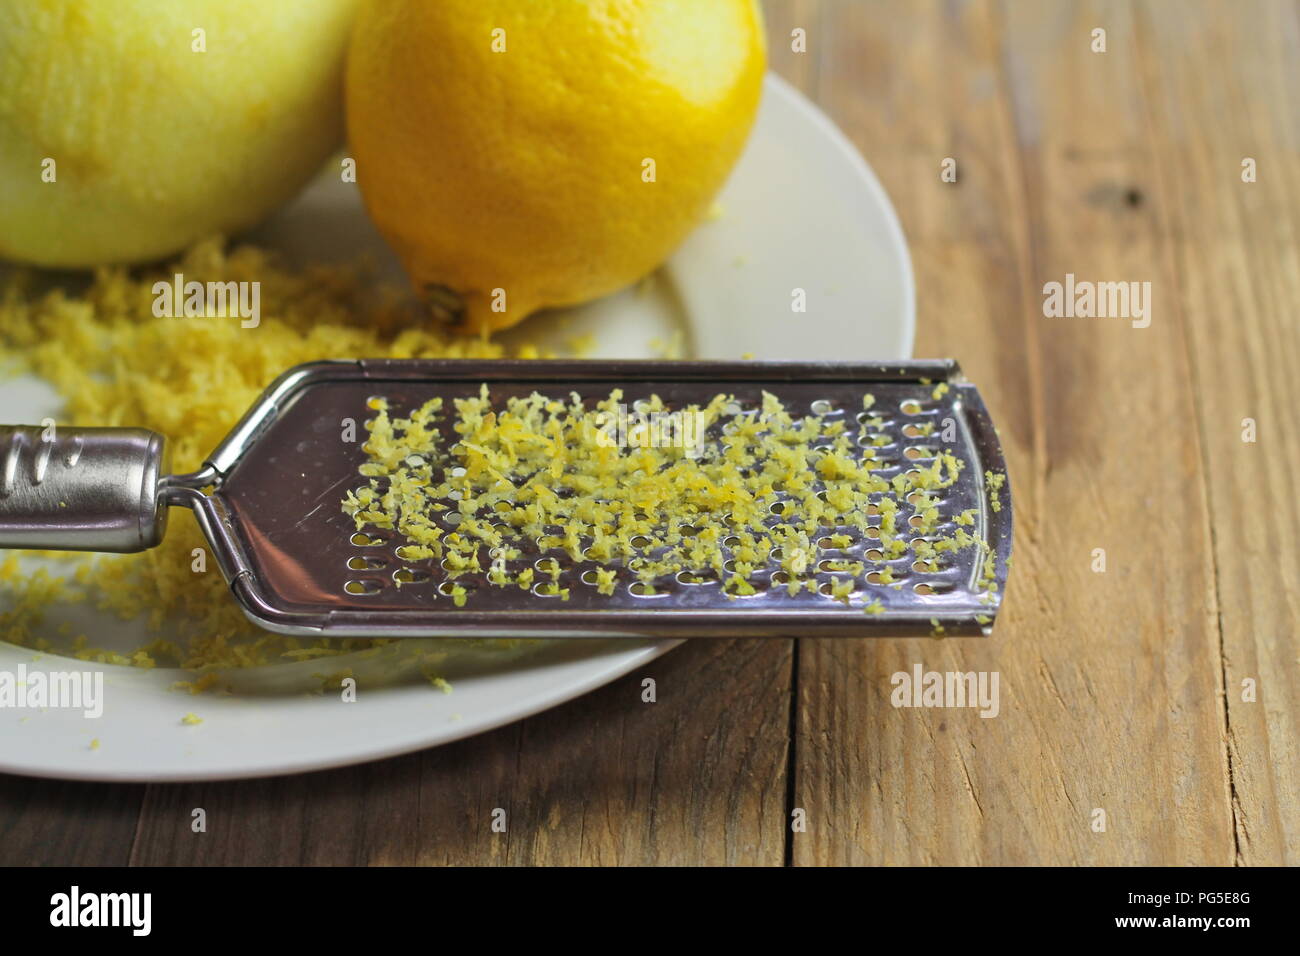 Zeste de citron frais biologiques utilisés pour la cuisson et la cuisson Banque D'Images